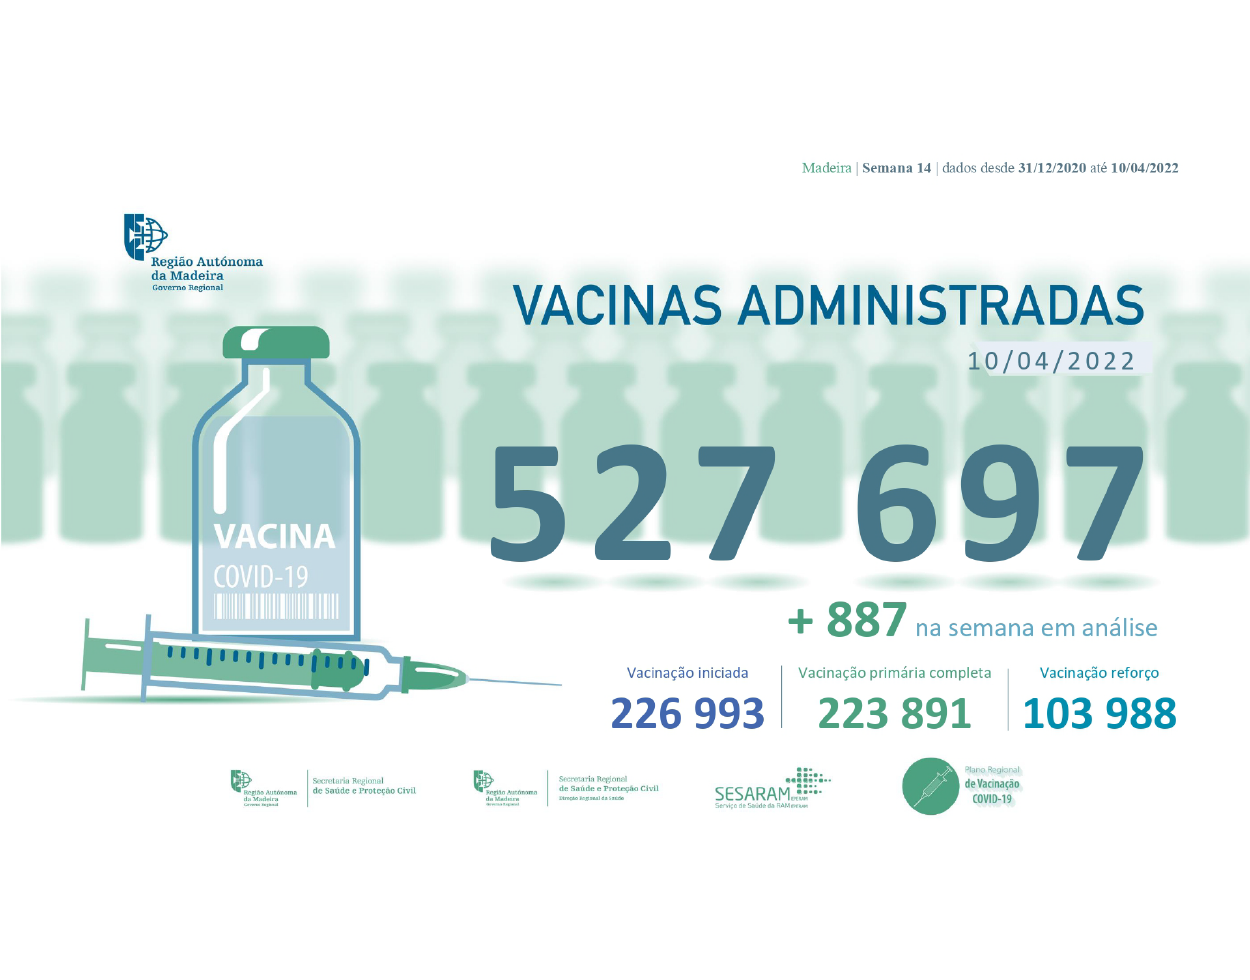 Administradas 527 697 vacinas contra a COVID-19 na RAM